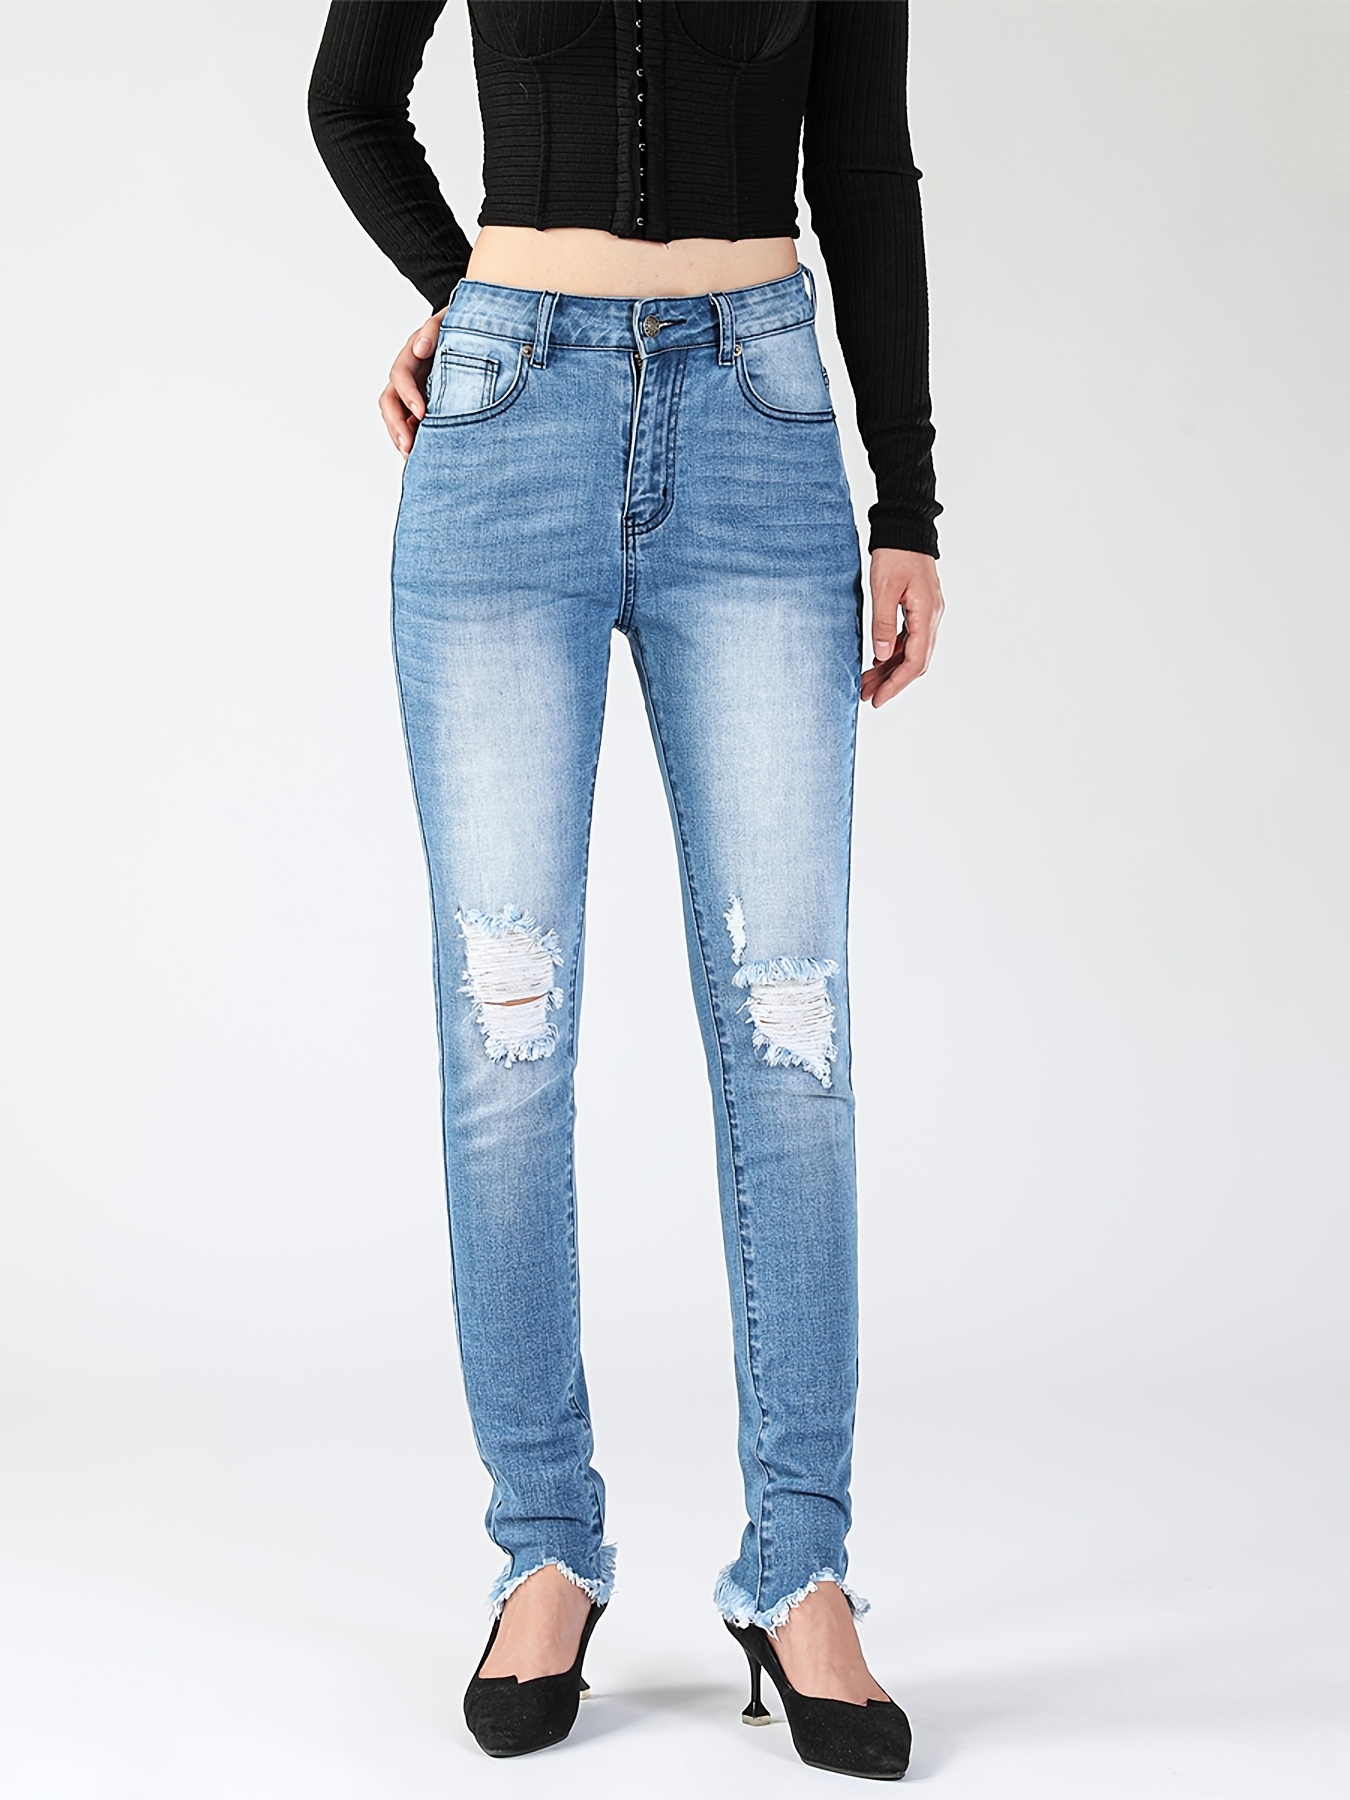 Jeans ajustados de talle alto bajo crudo  Pantalones jeans para mujer,  Pantalones jeans de moda, Pantalones de mezclilla mujer